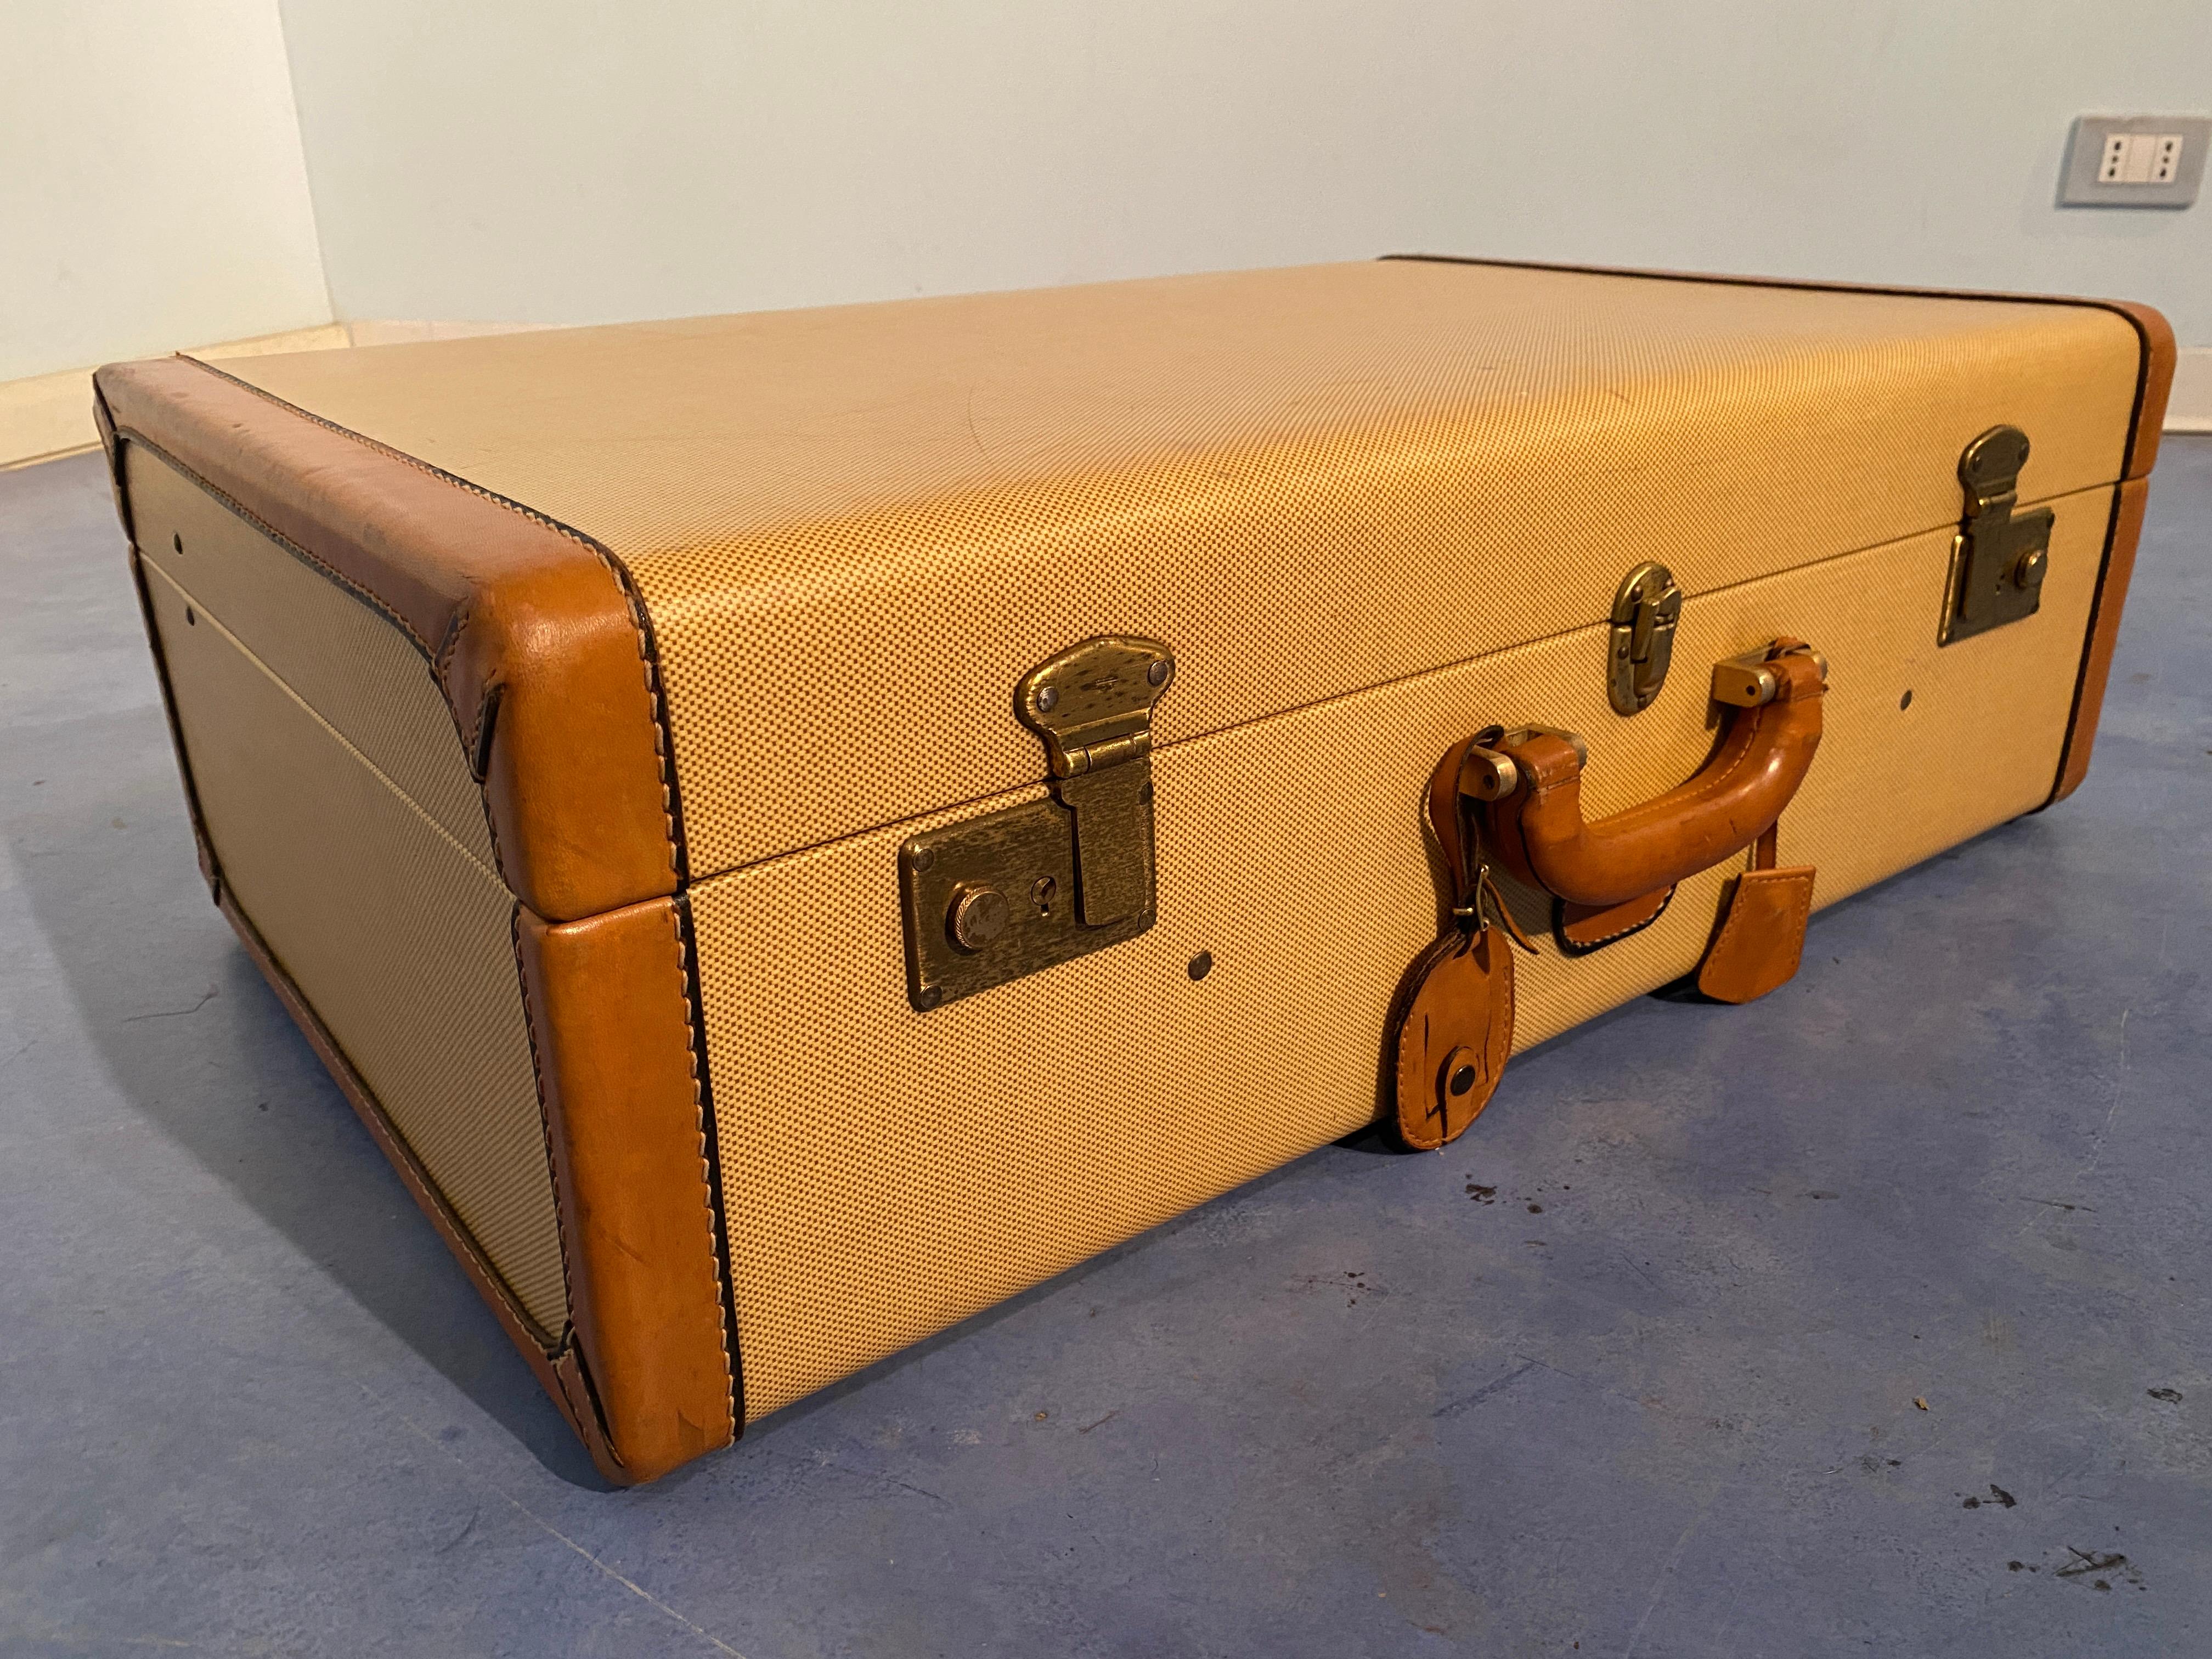 Schöner italienischer Koffer aus dem Jahr 1960. Ganz besonders als Sammlerstück oder als Möbelstück. Der Koffer befindet sich in einem sehr guten Zustand und ist vollständig original. Er kann auch heute noch verwendet werden. Original